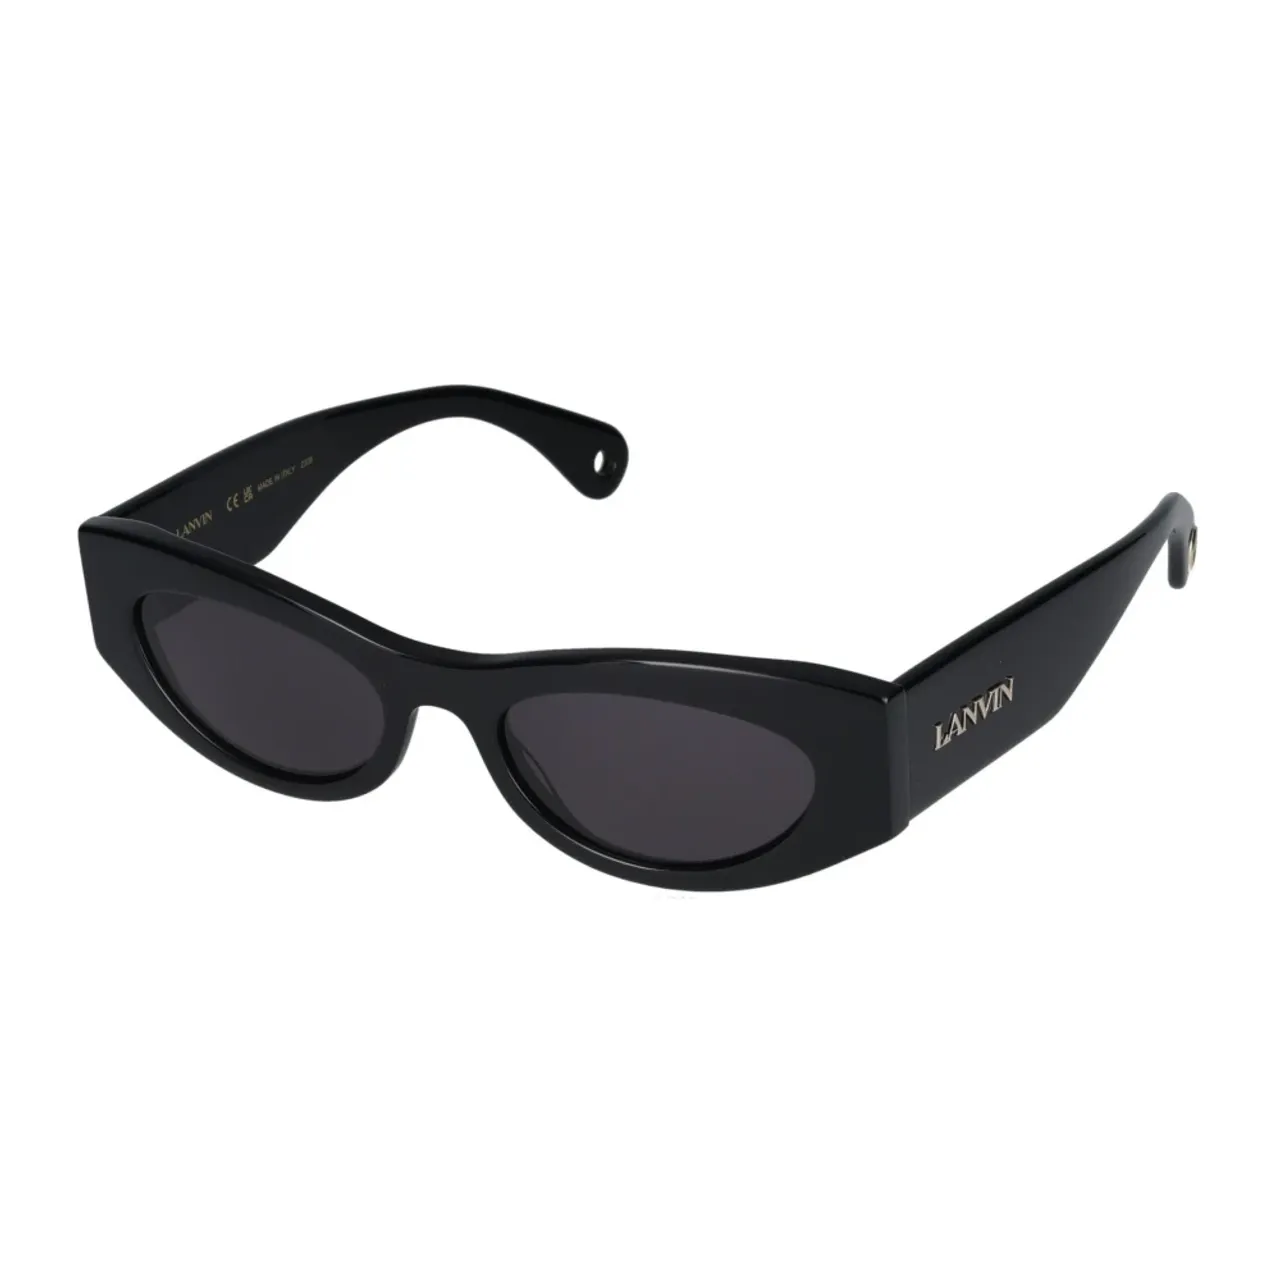 Stylische Sonnenbrille,LNV669S Sonnenbrille,Stylische Sonnenbrille mit 330 Design,Stylische Sonnenbrille Lnv669S Lanvin